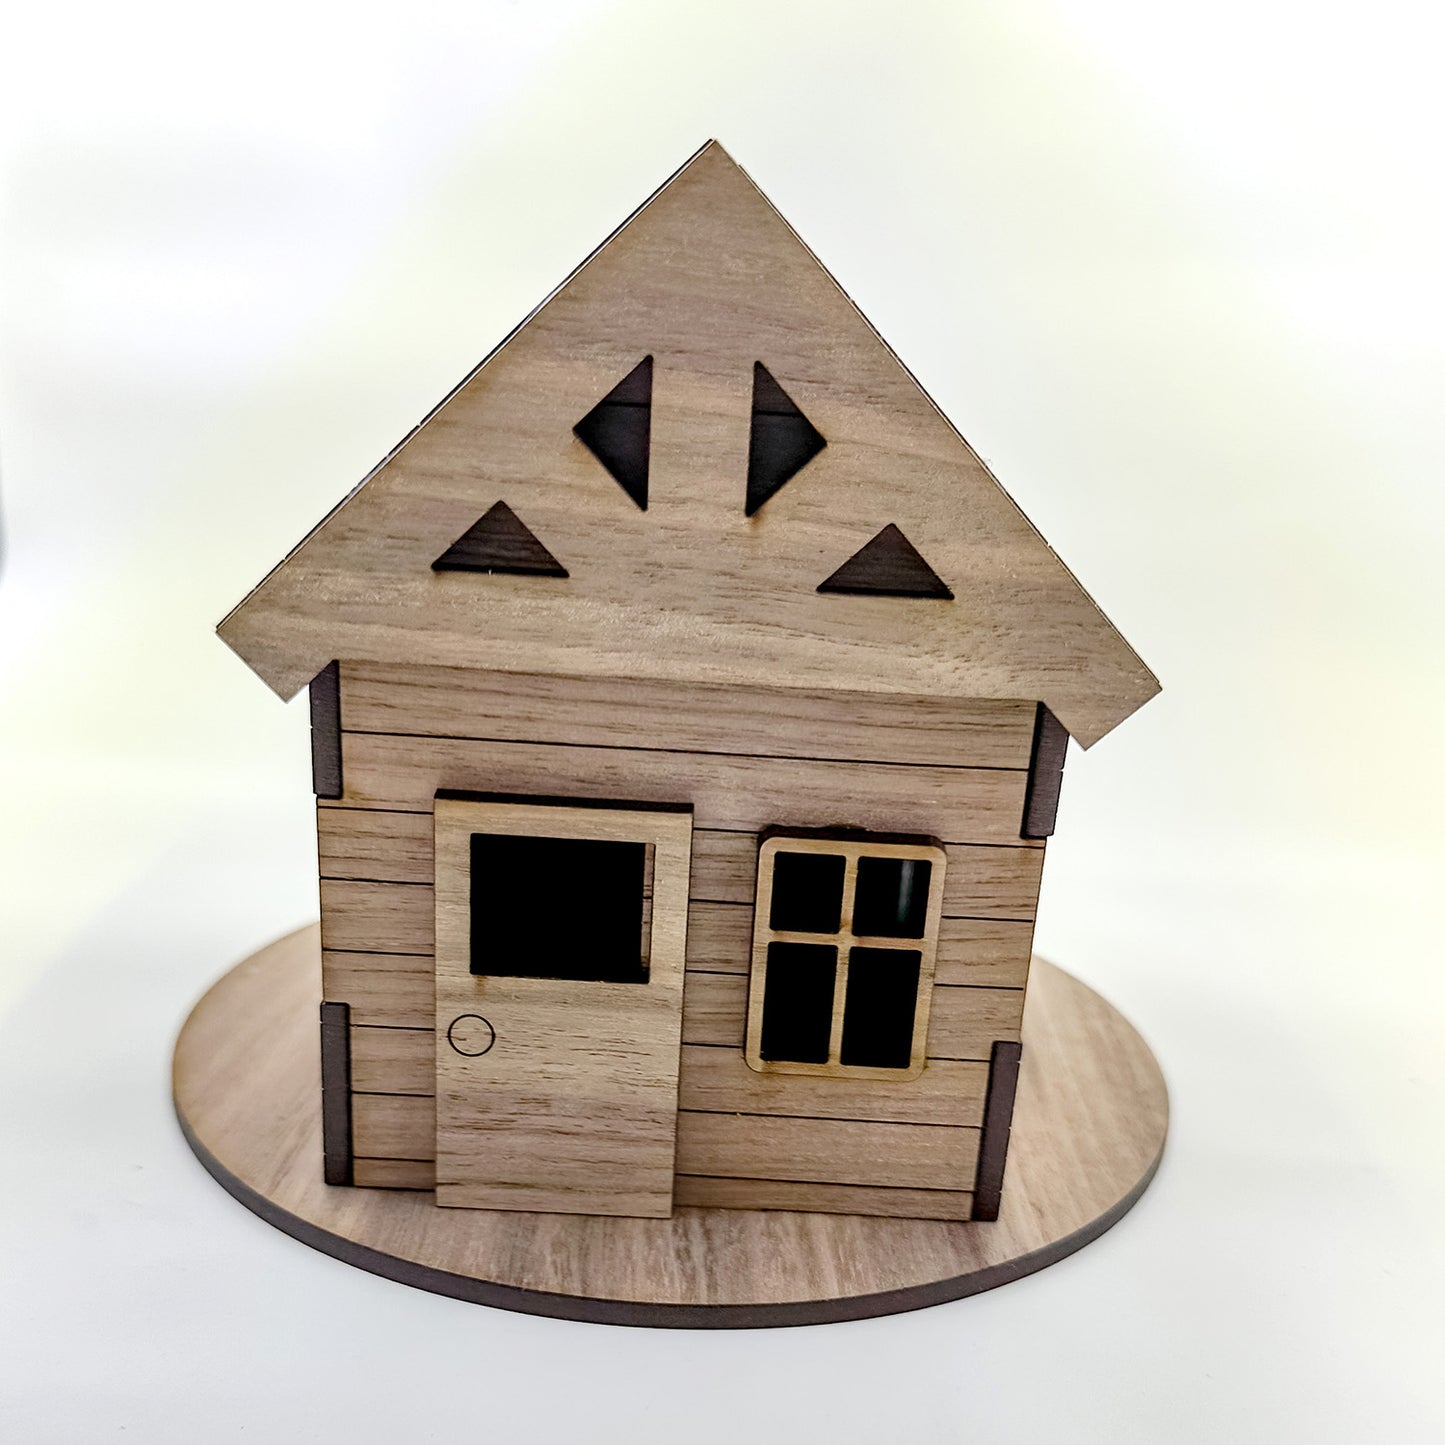 3D Farmhouse Shelf Decor Christmas Village House Christmas Ornament